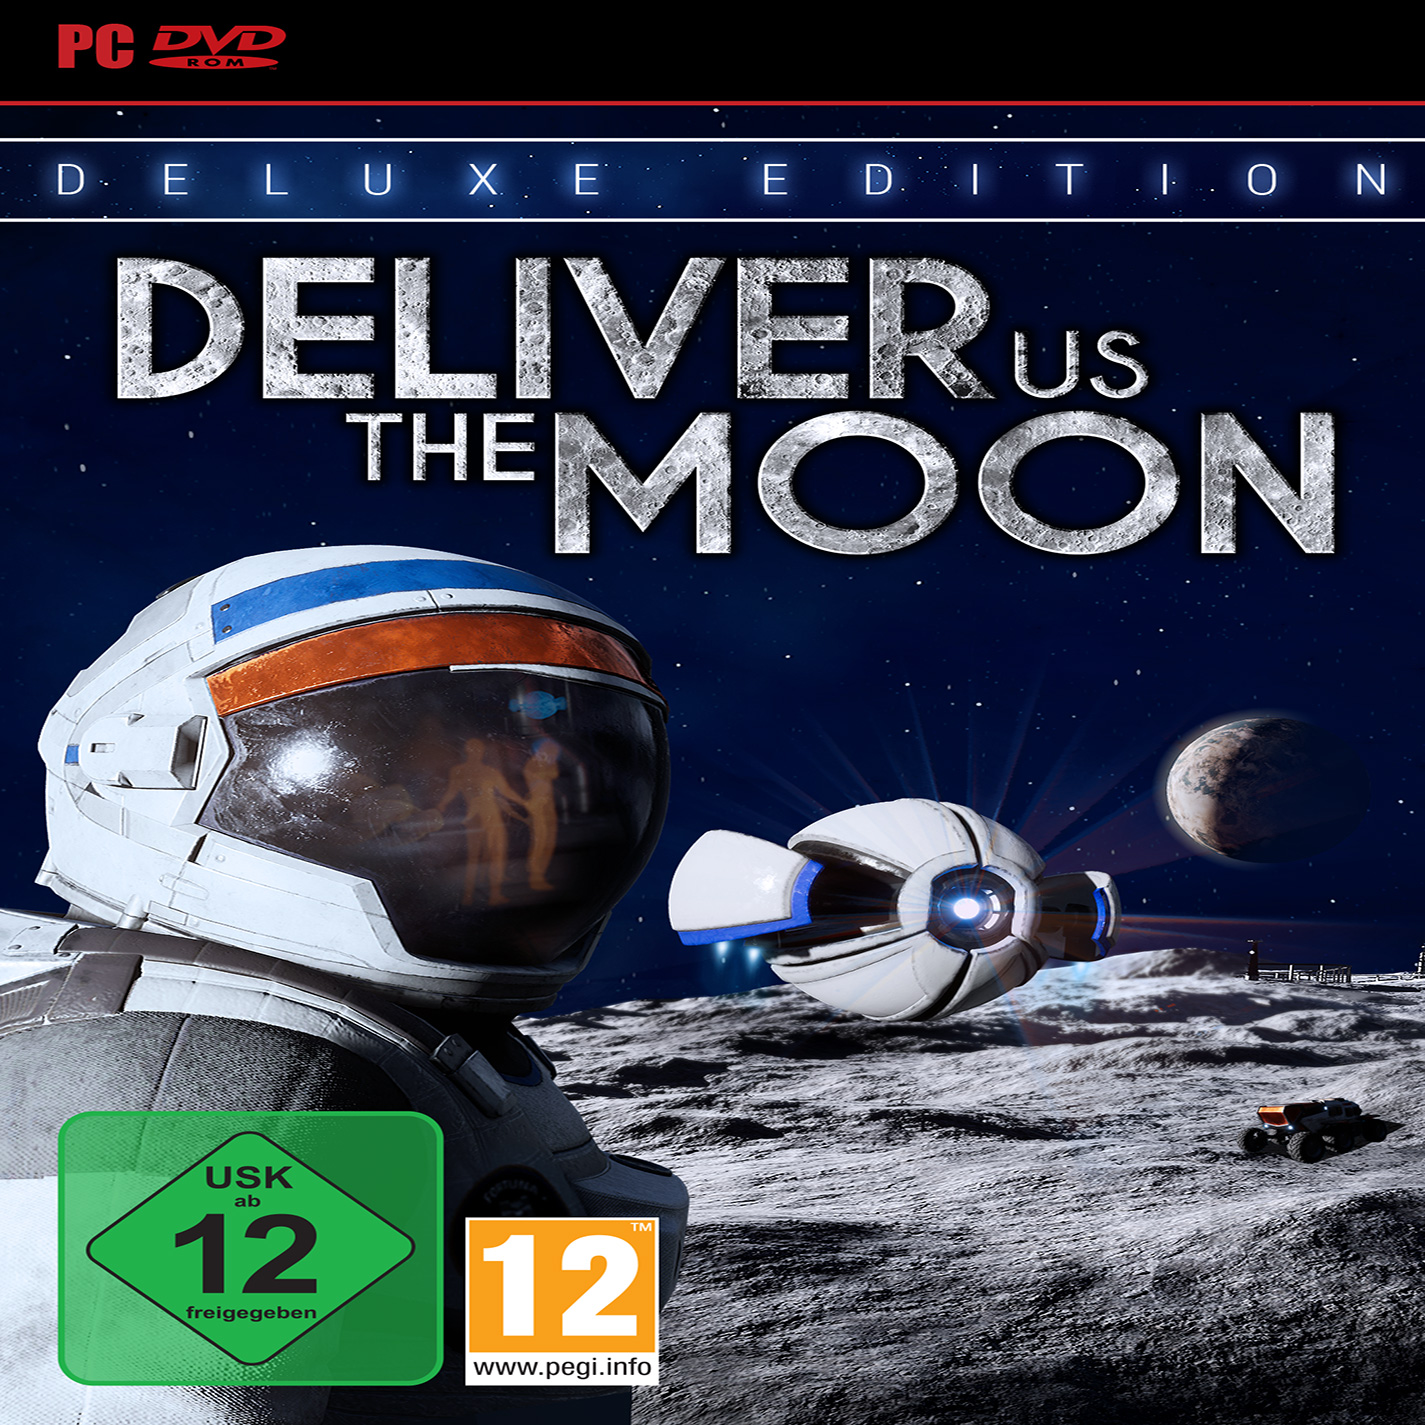 Deliver Us The Moon - predn CD obal